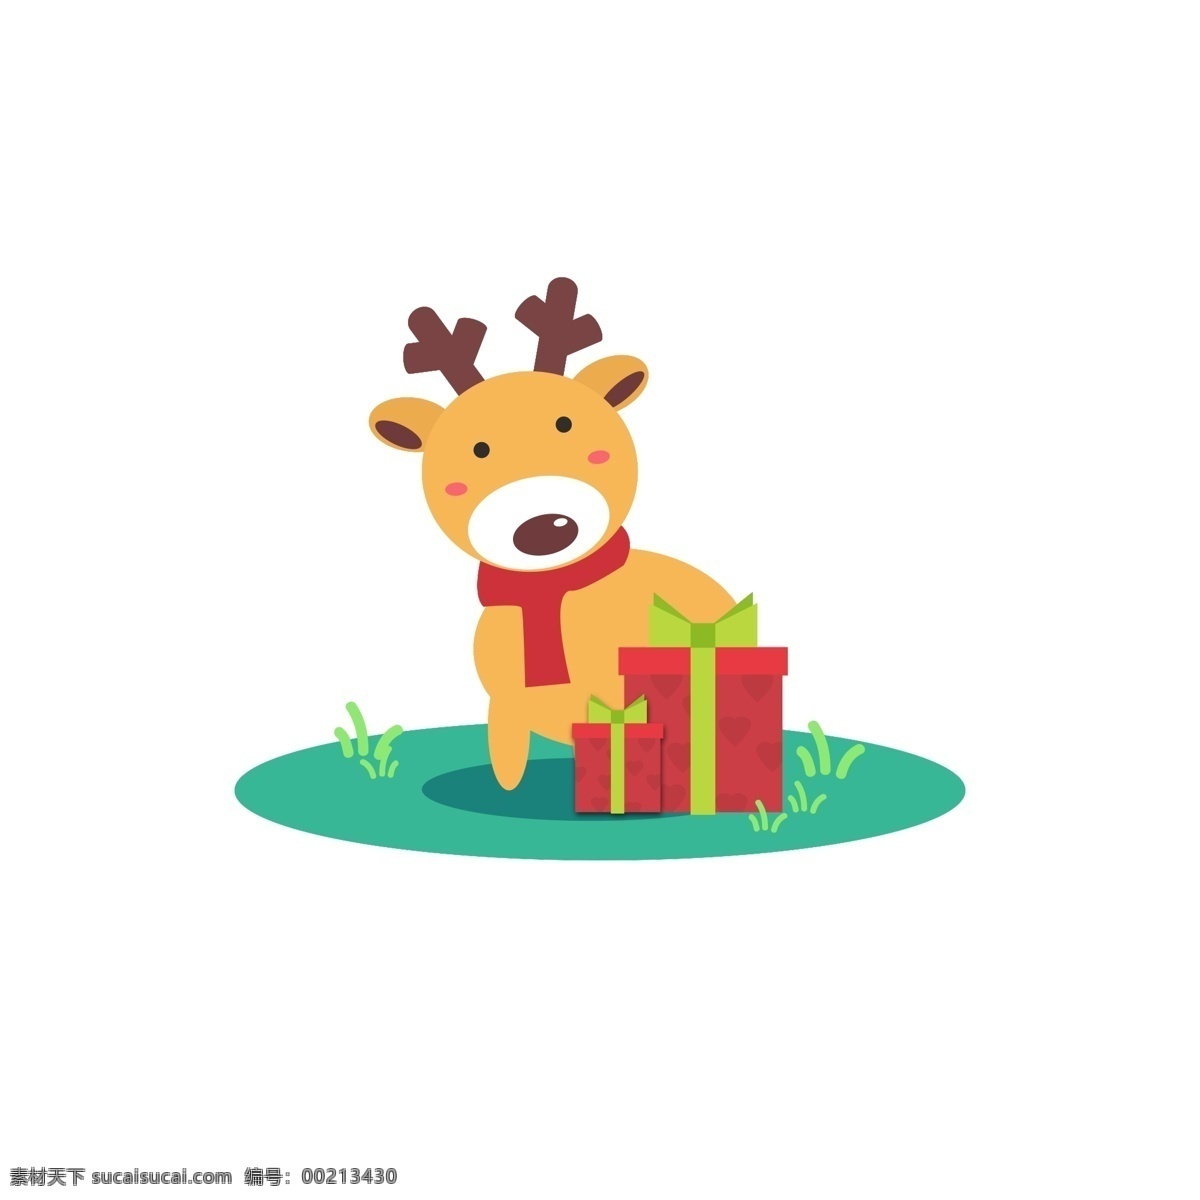 圣诞 麋鹿 原创 插画 商用 元素 礼物 草地 可爱 圣诞节 卡通 动物 配图 节日